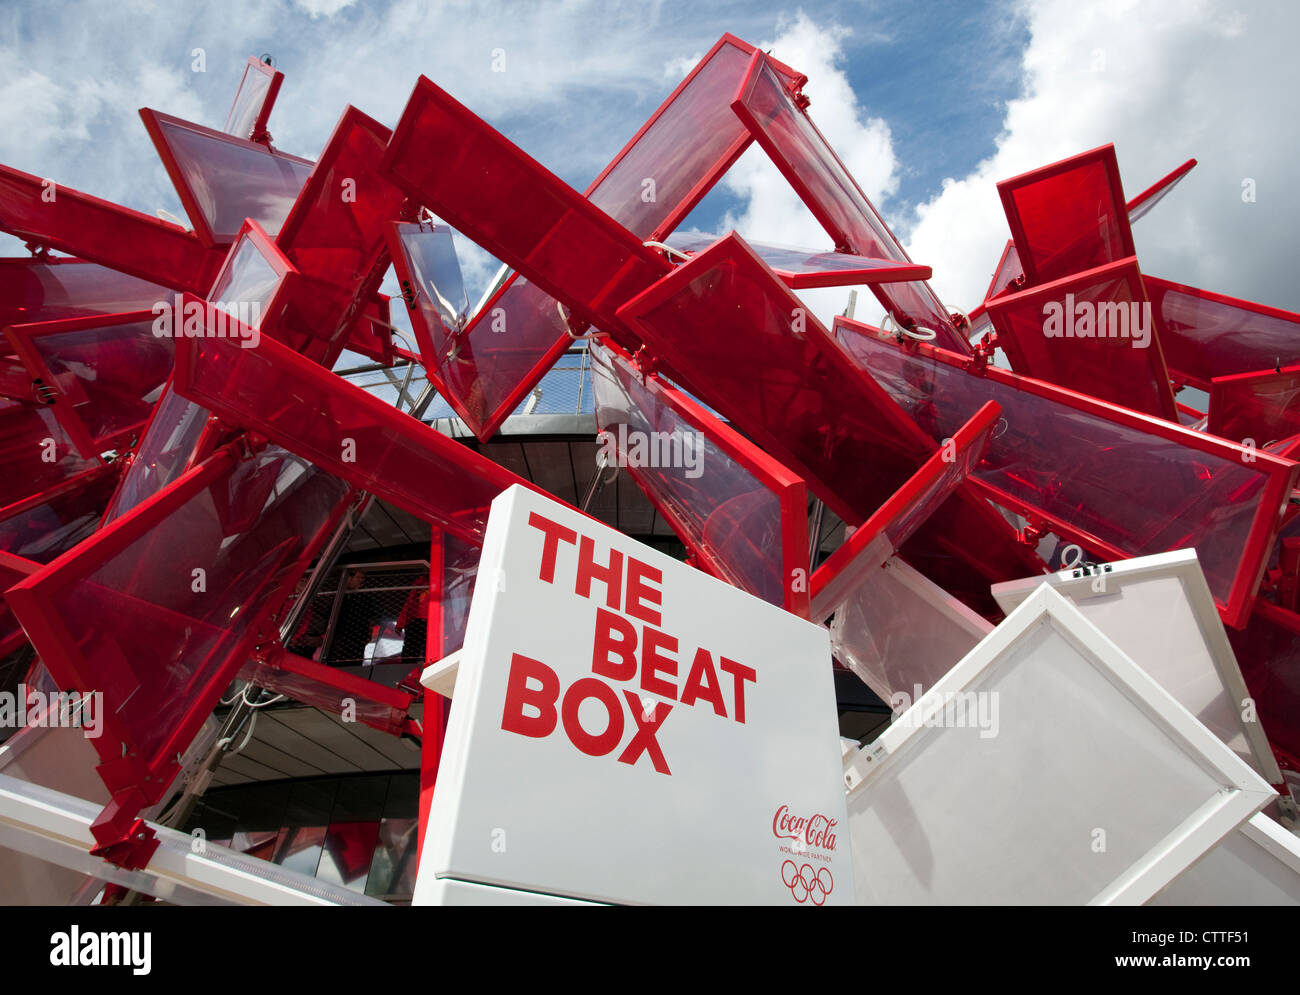 Juegos Olímpicos de Londres 2012 - El Beat Box característica musical Foto de stock